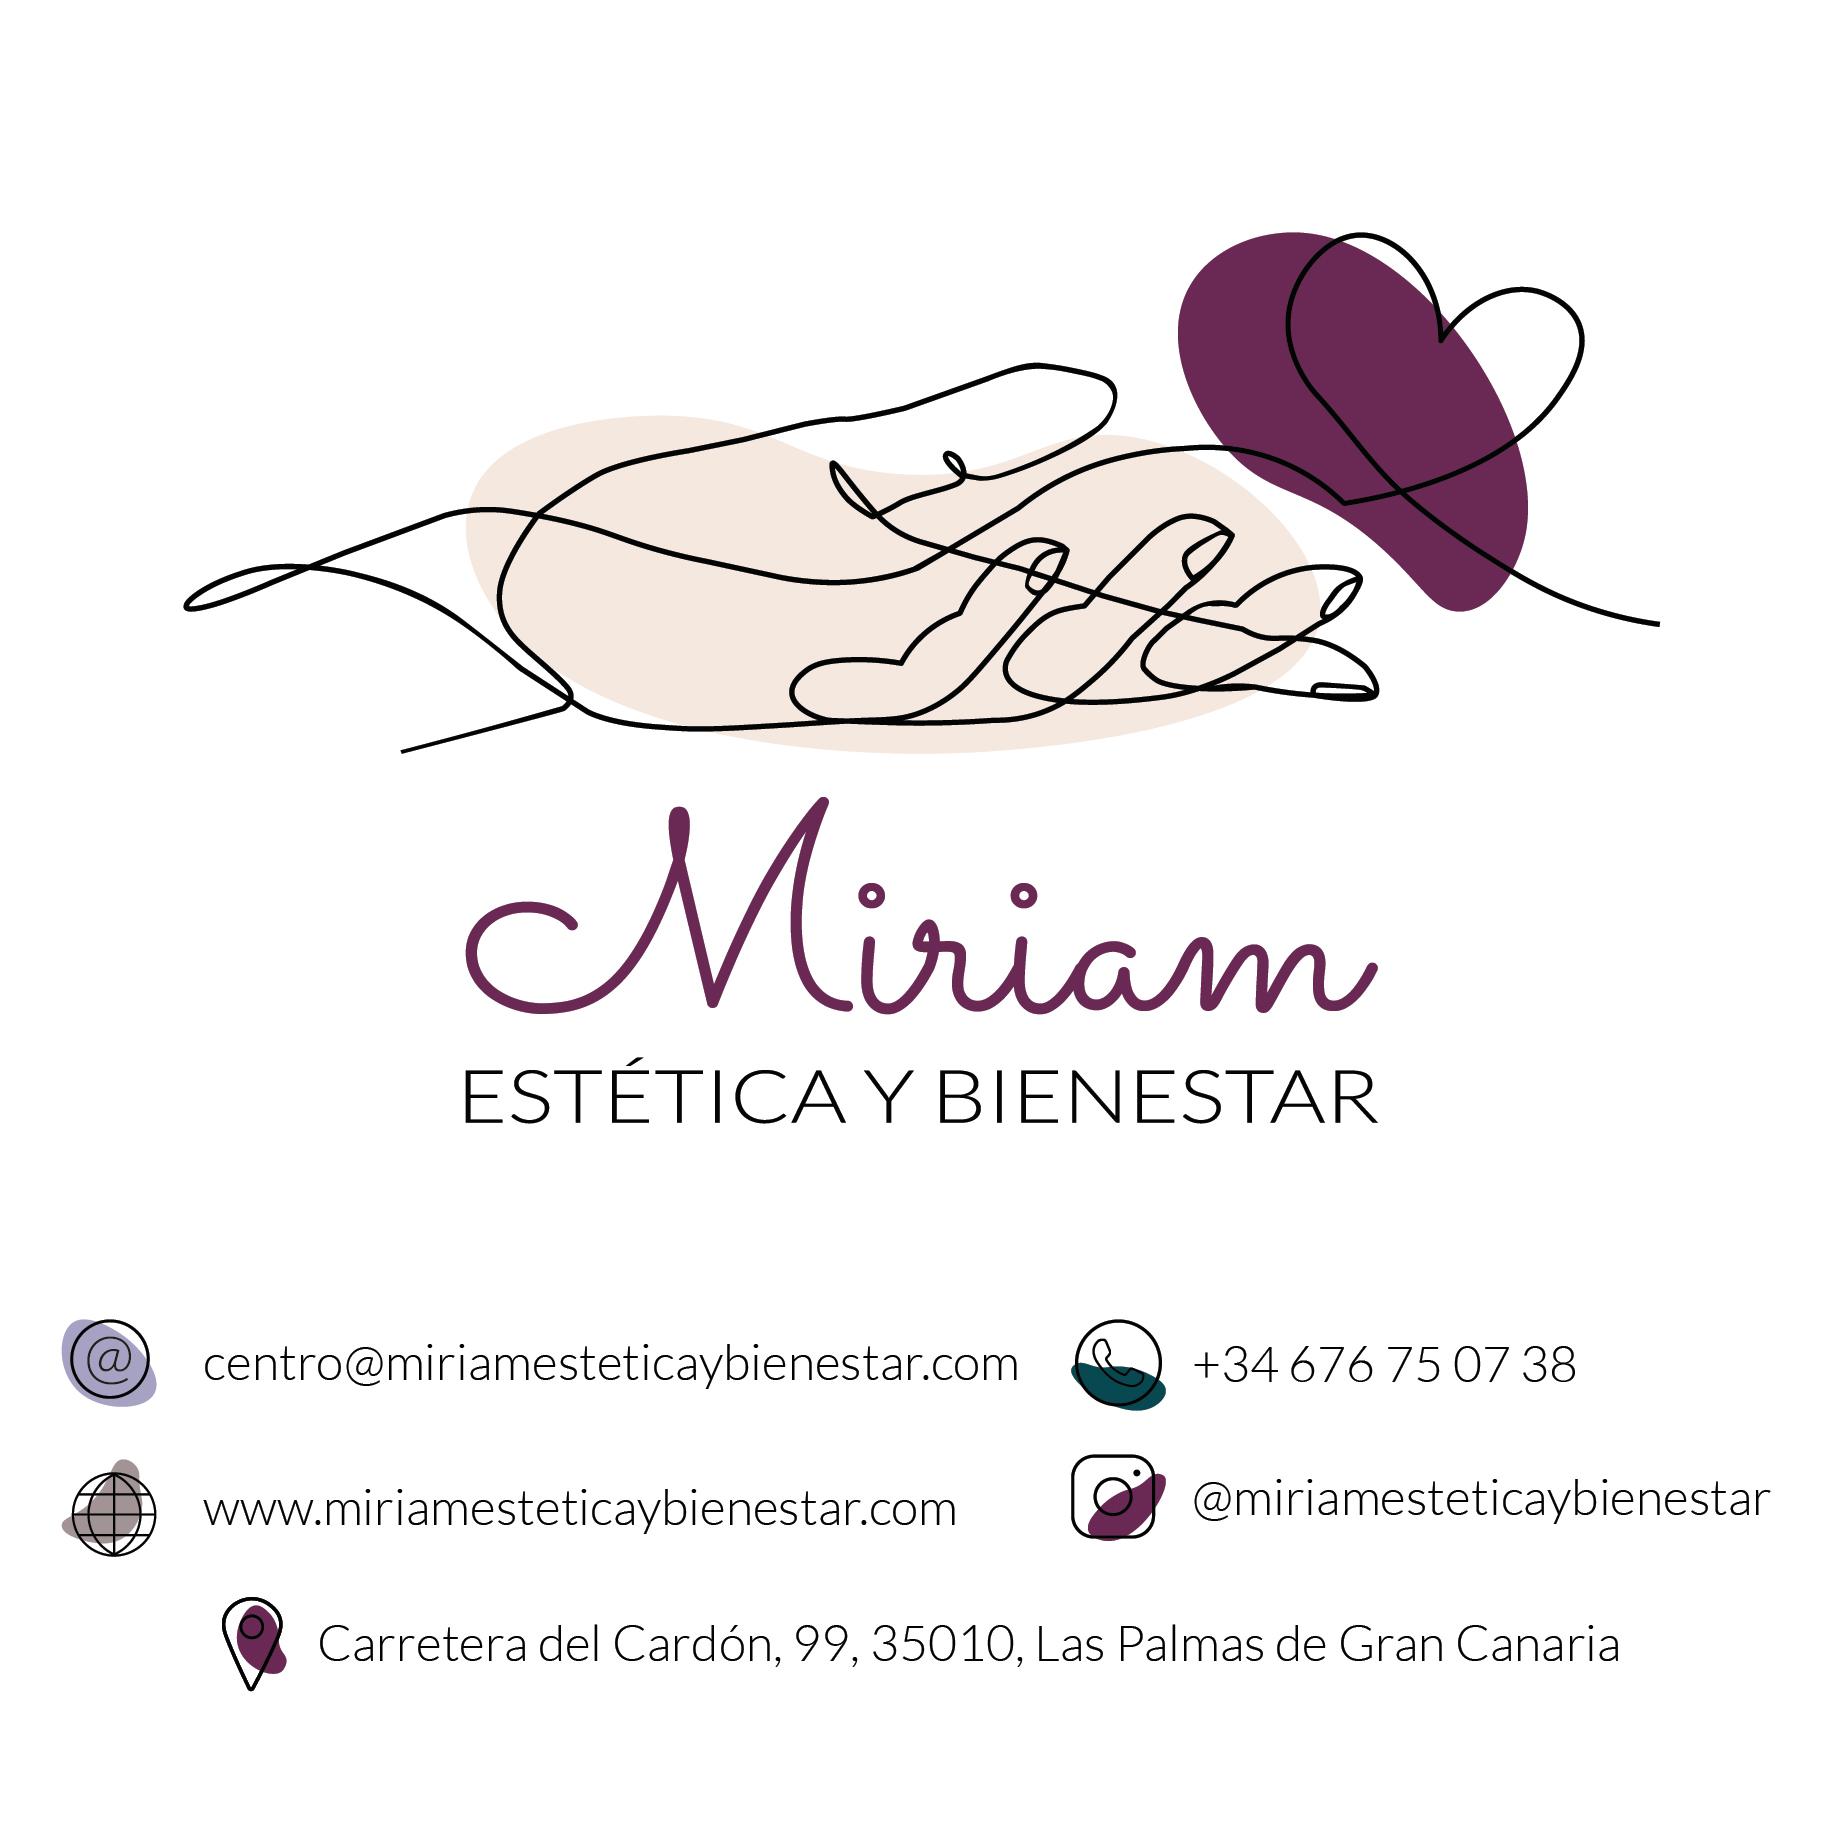 Images Miriam Estética y Bienestar